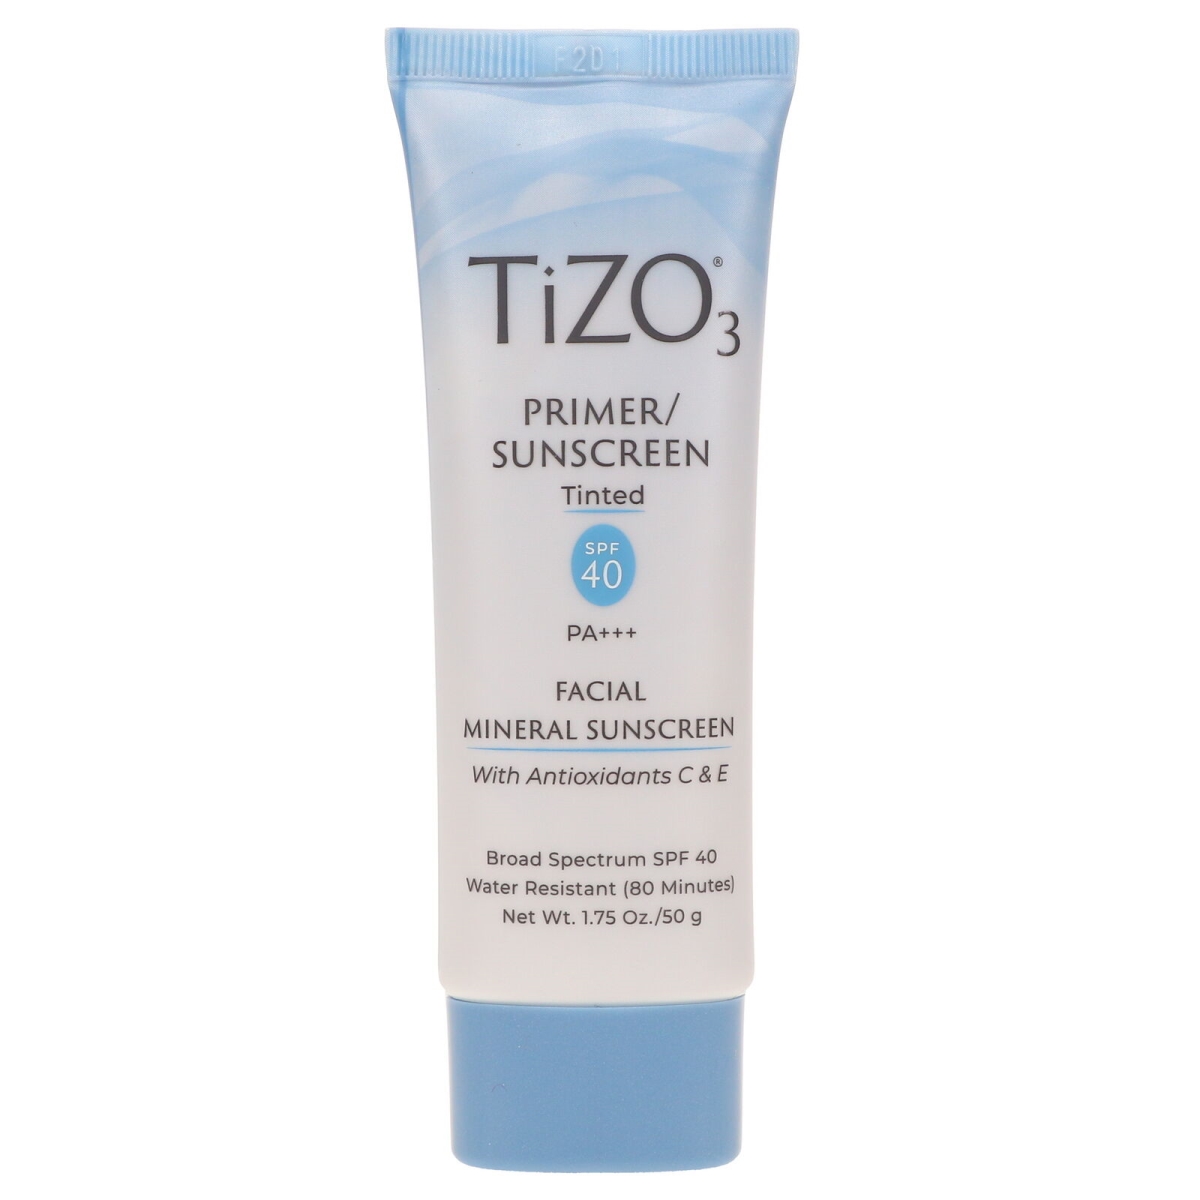 Formulario 1.75 oz Tizo 3 Facial SPF 40 Mineral Sunscreen Tinted